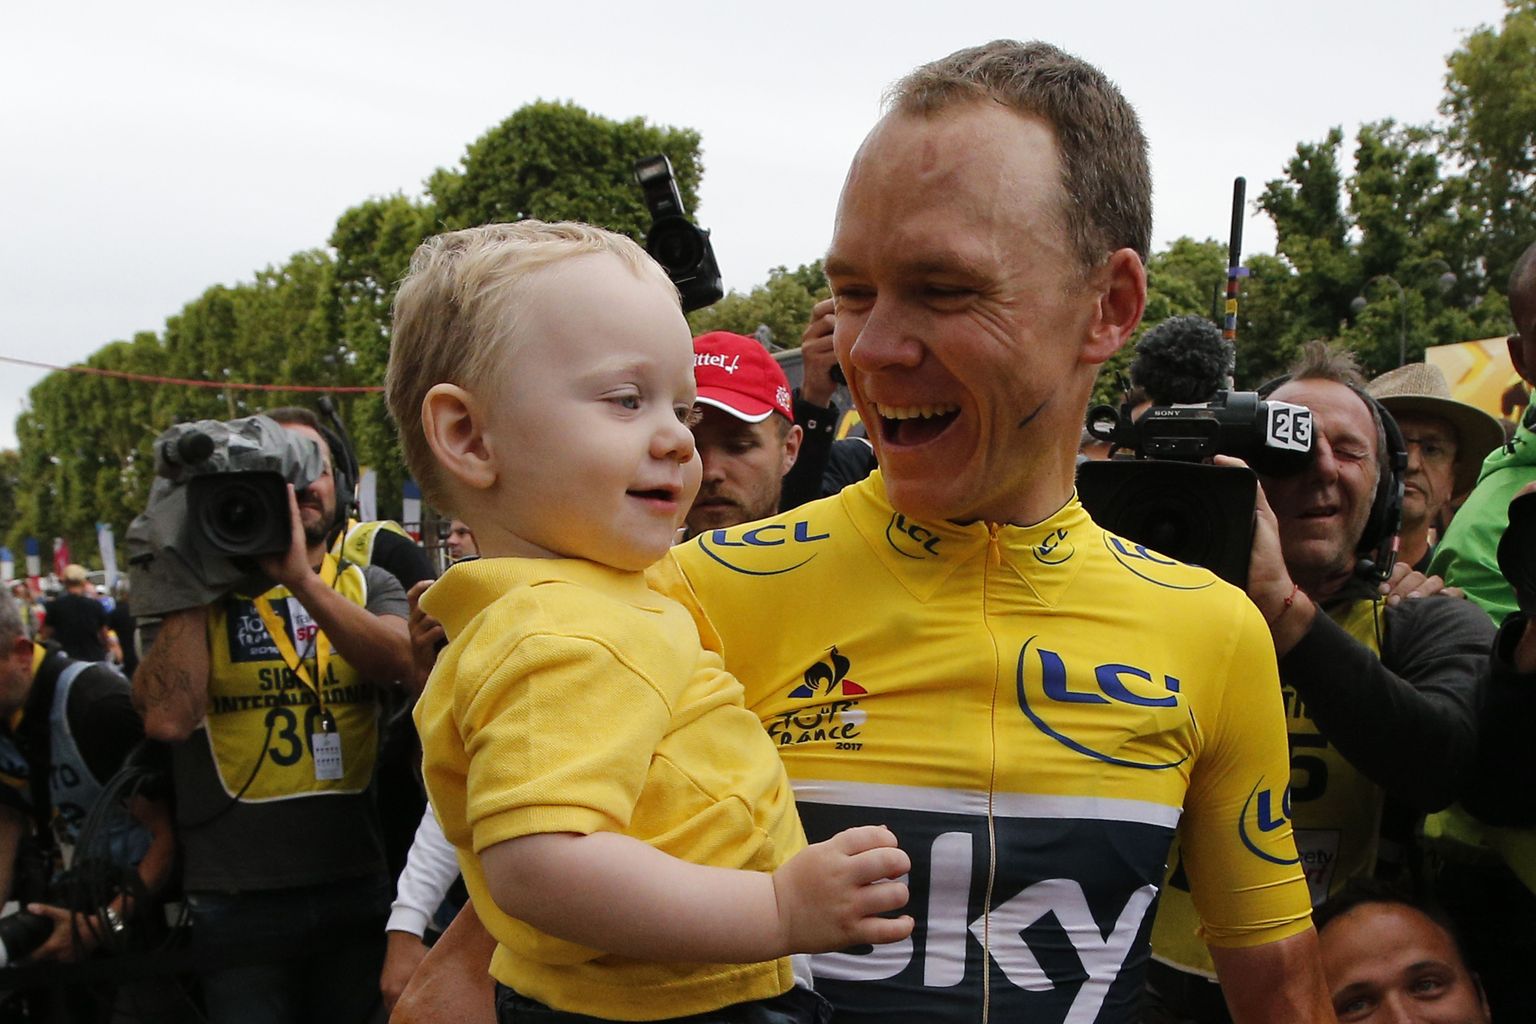 Kolmandat aastat järjest Tour de France'i võitnud Chris Froome rõõmustab koos pisipoja Kellaniga.